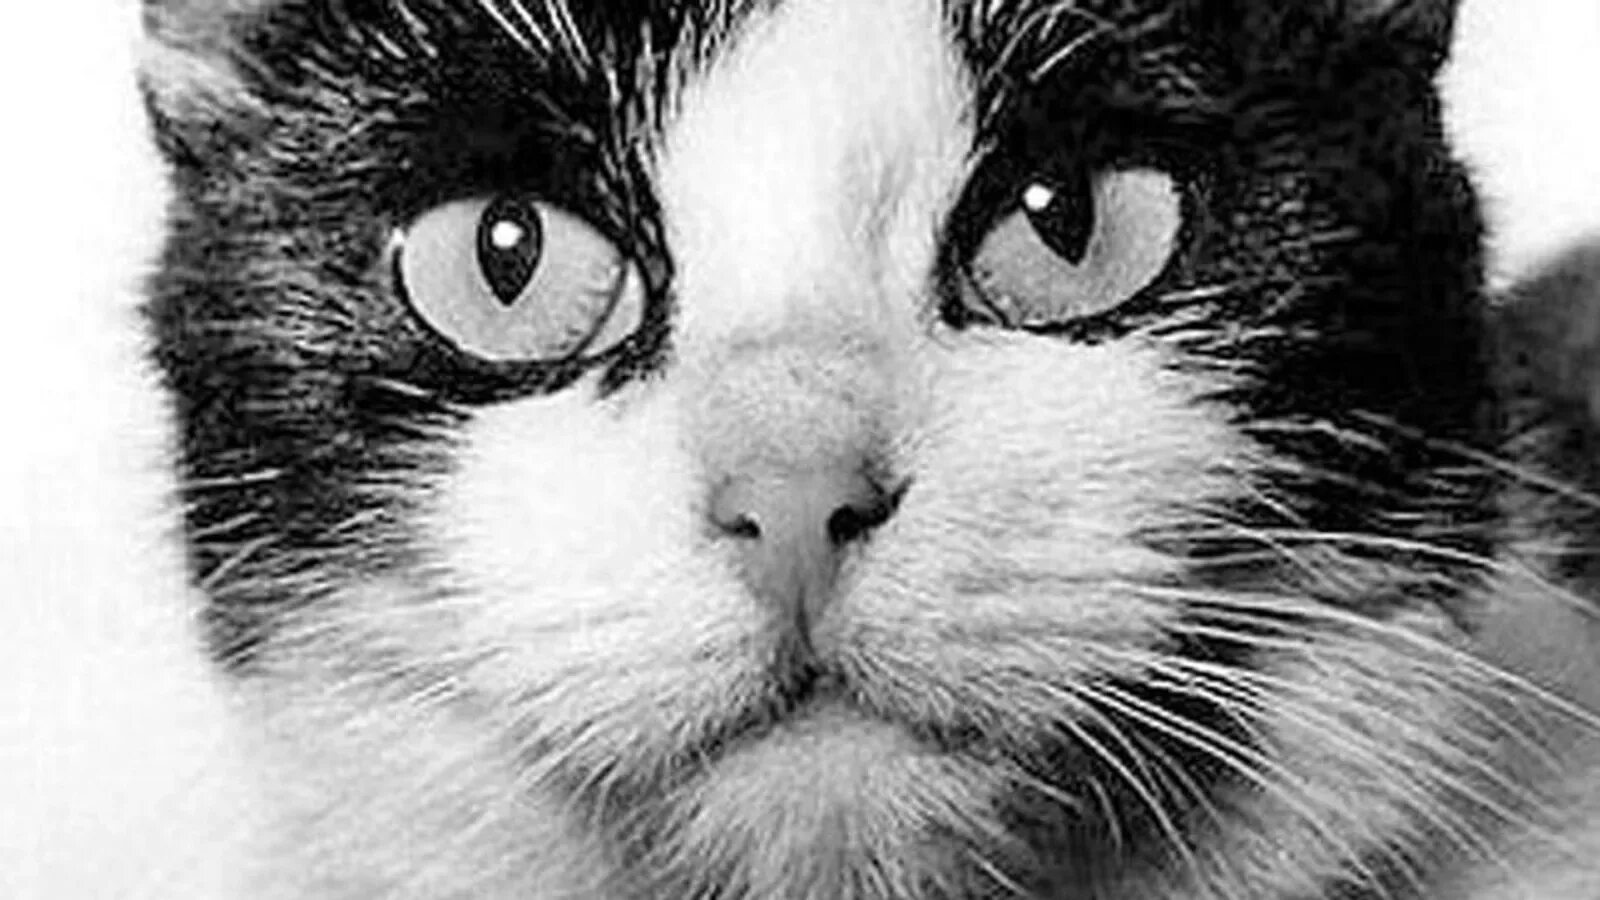 Кошка полетевшая в космос. Фелисетт первая кошка. 18 Октября 1963 года Франция кошка Фелисетт. Кошка Фелисетта в космосе.